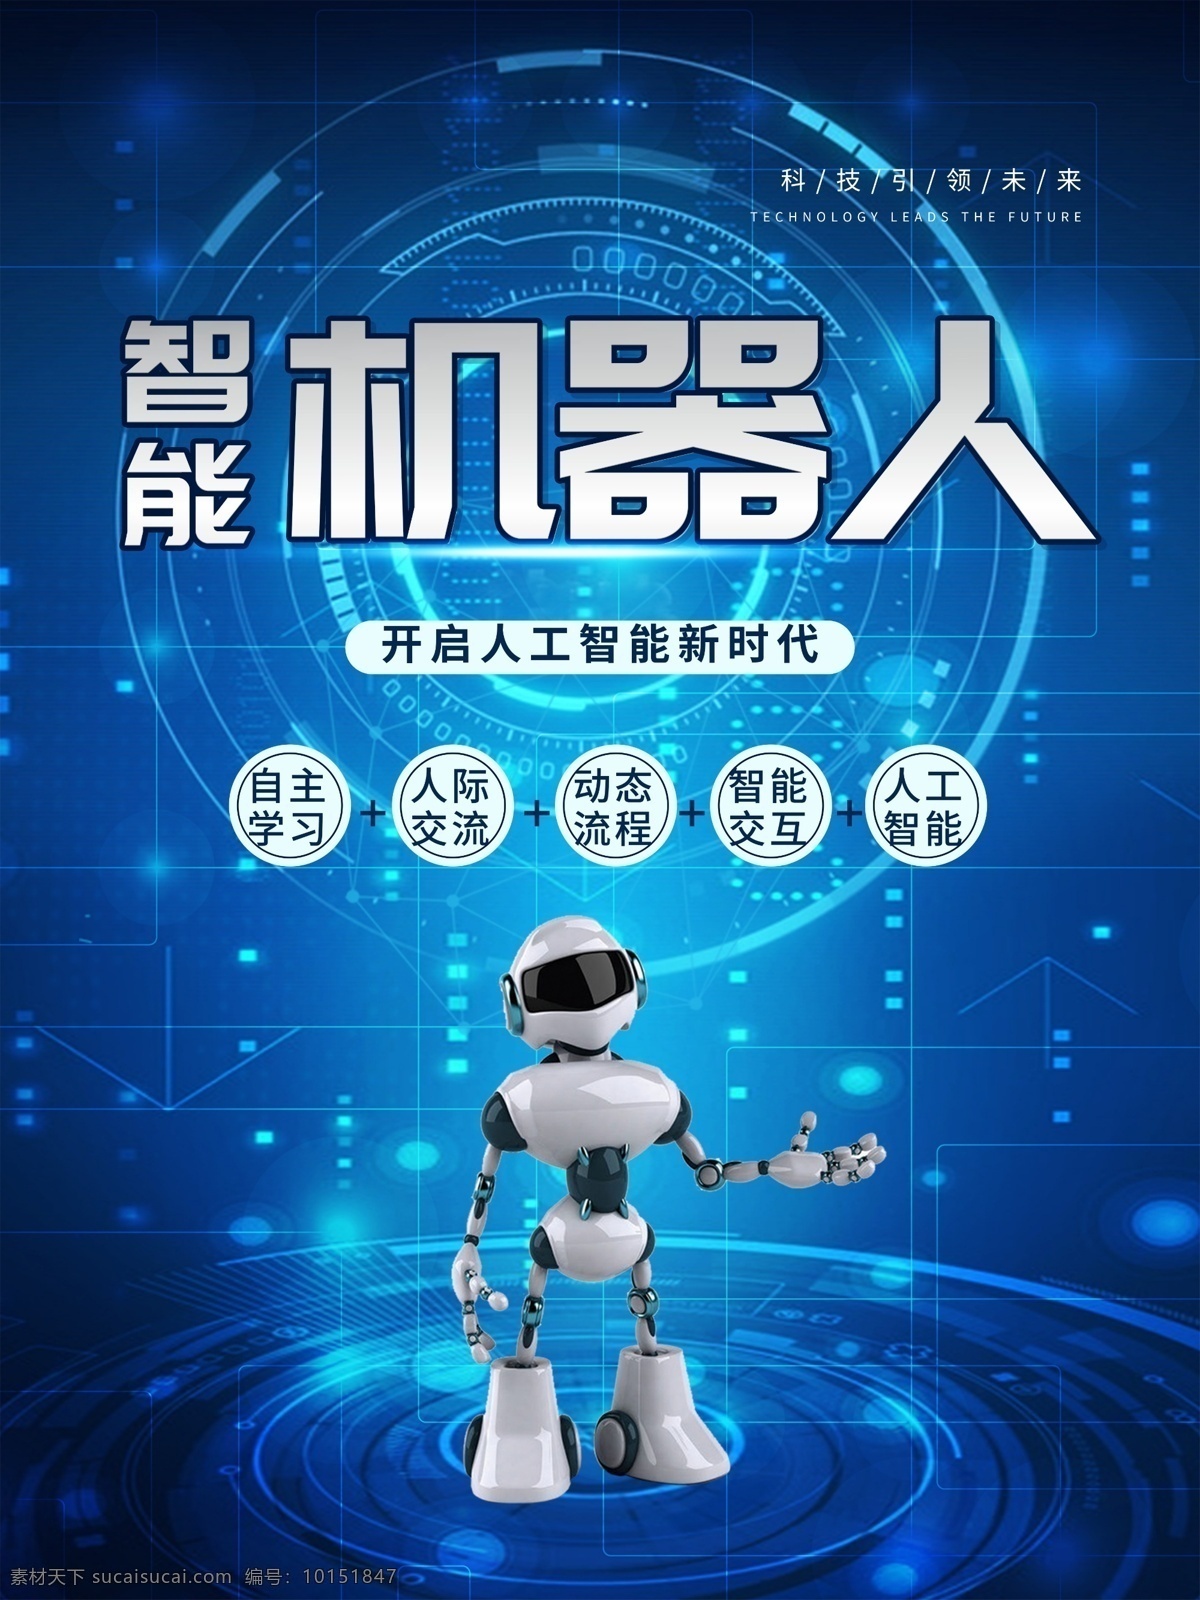 智能机器人 人工智能 人形机器人 未来机器人 科技 海报 机器人握手 人工智能创意 机器人 机器人展板 数码产品 人工智能设计 机器人海报 人工智能化 智能时代